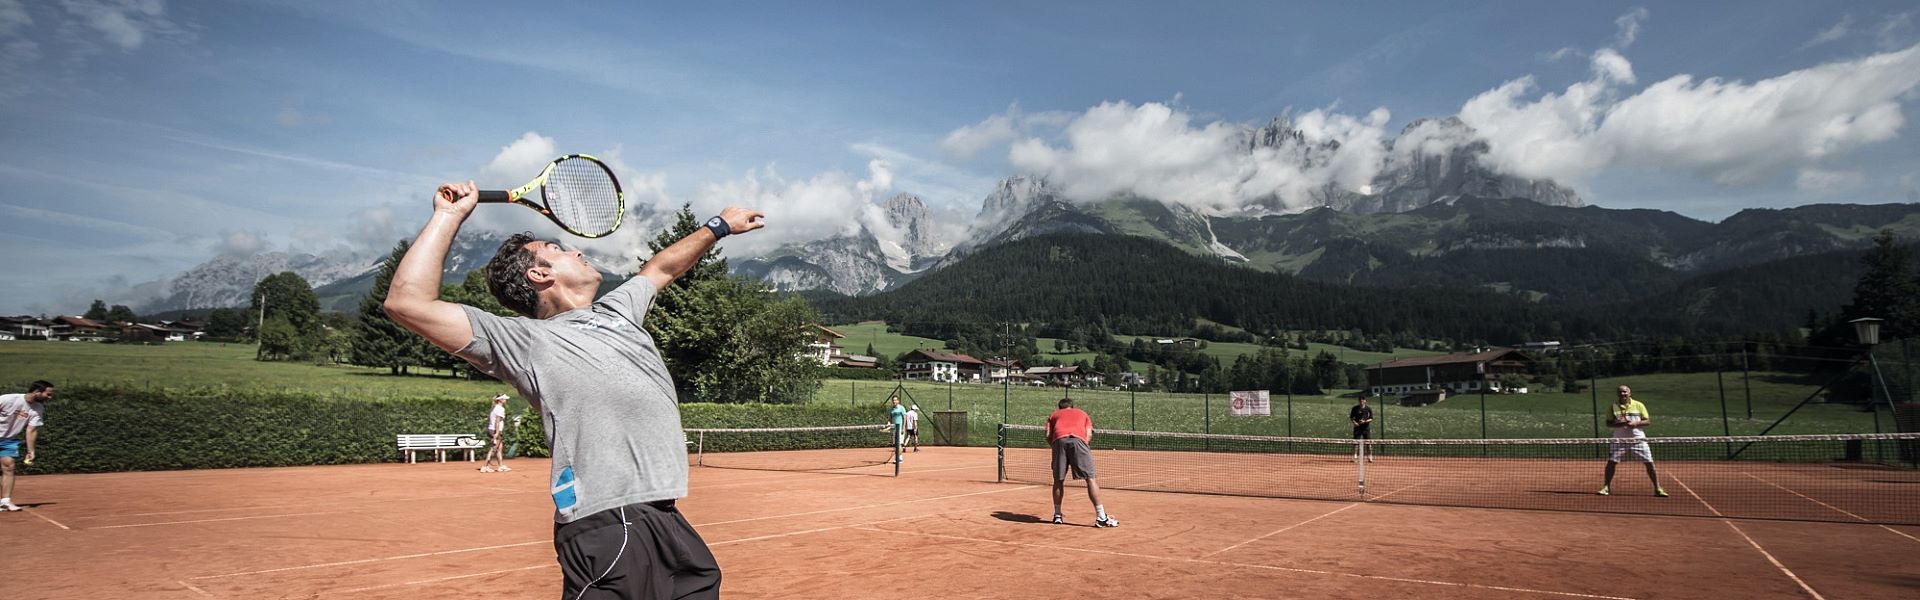 <strong>Tennis ...daheim</strong><br><br>Erleben Sie die weltberühmte Tennisschule „Peter Burwash International“ seit 40 Jahren exklusiv in Österreich bei uns im Stanglwirt!